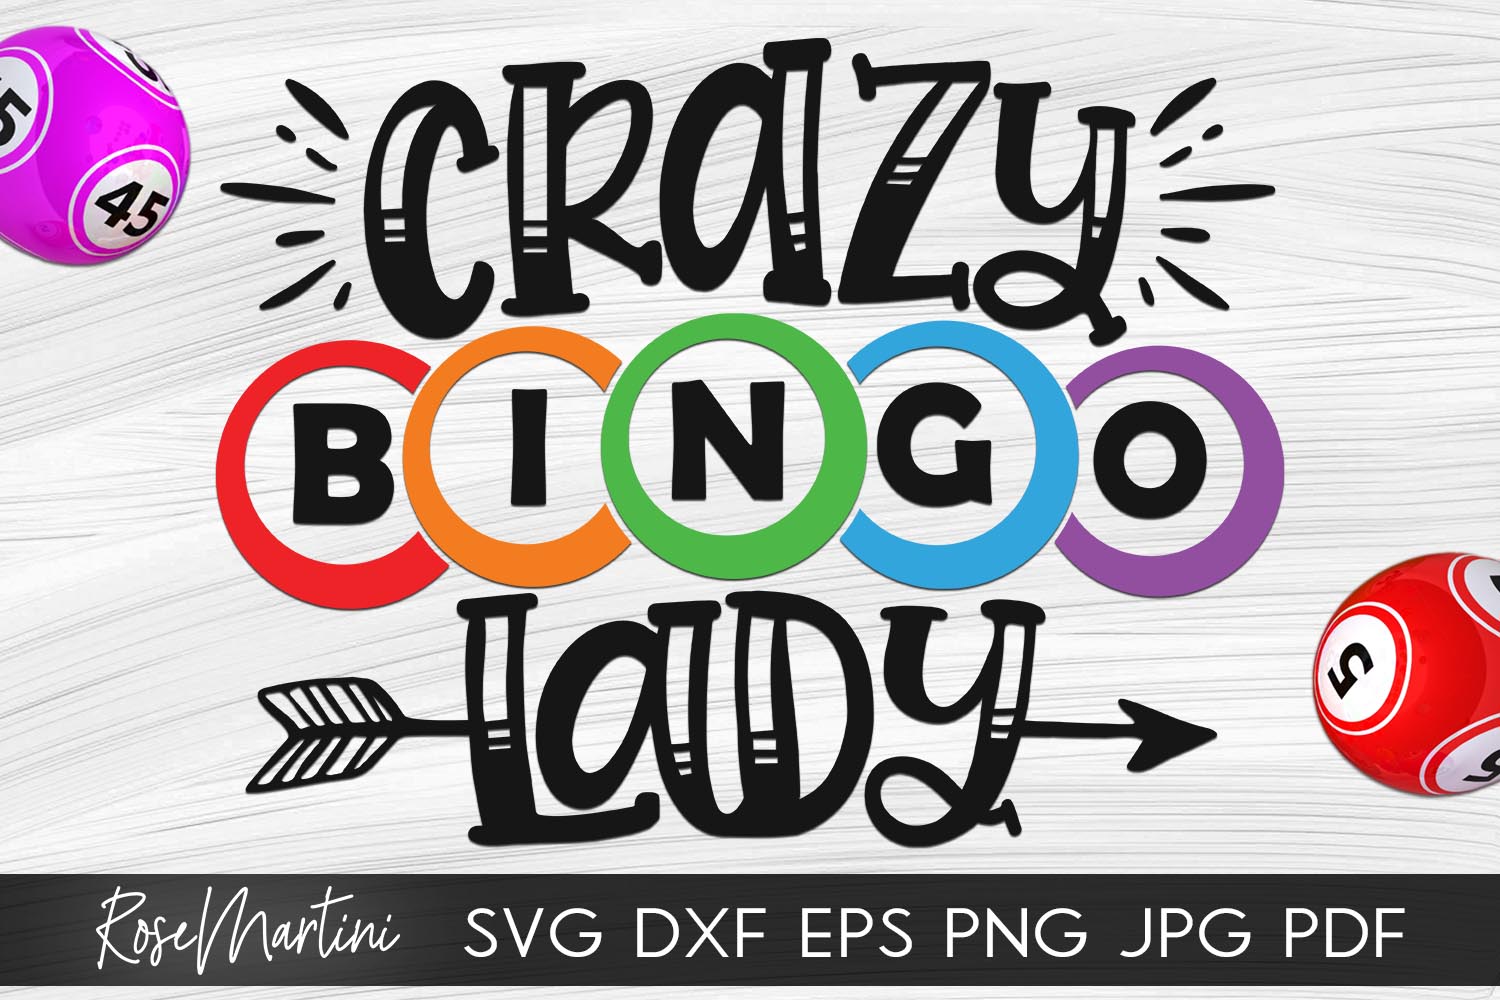 Crazy bitch bingo